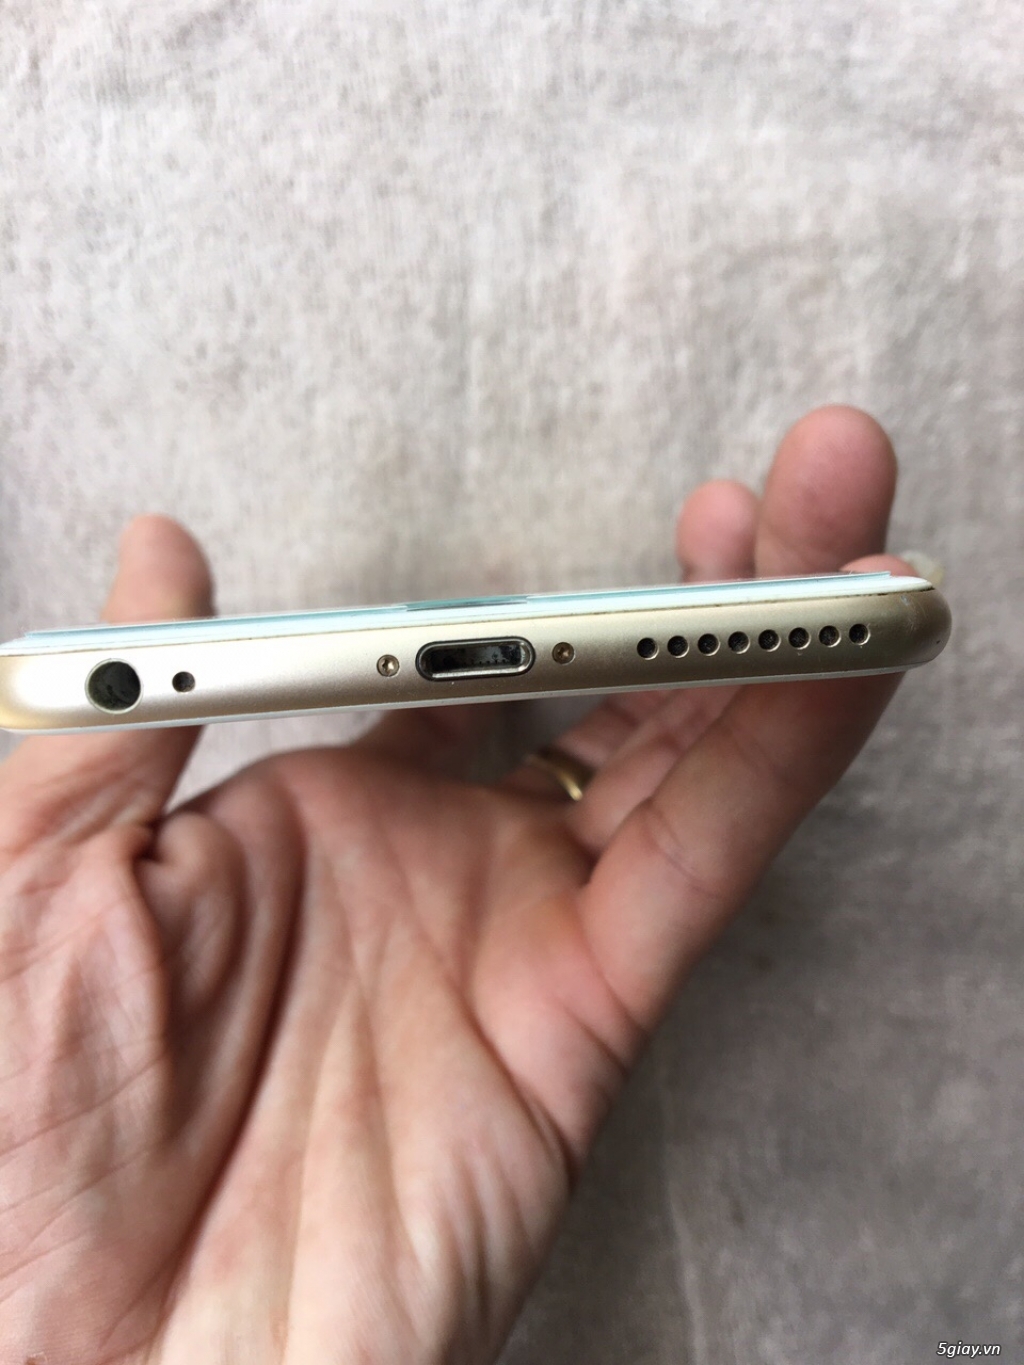 iphone 6 Plus Gold 64gb máy zin all chưa vết trầy